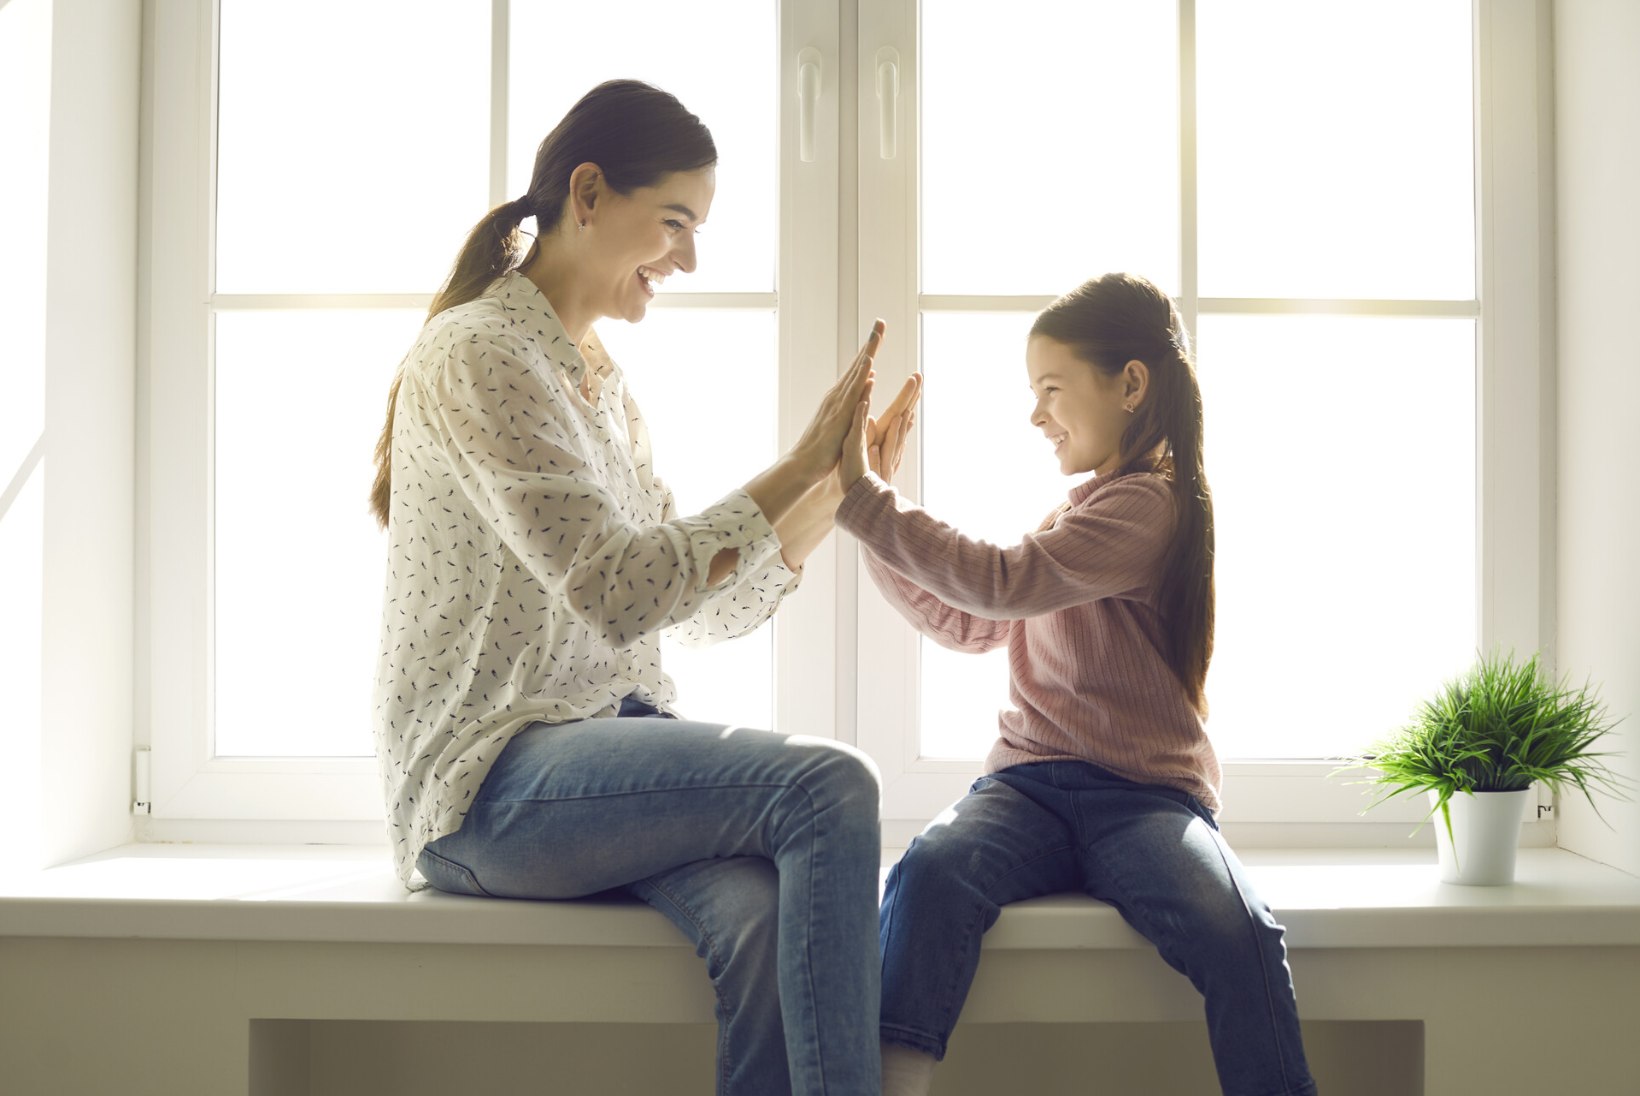 Väärt nõu psühholoogilt: seitse kasulikku nippi, kuidas olla parem lapsevanem